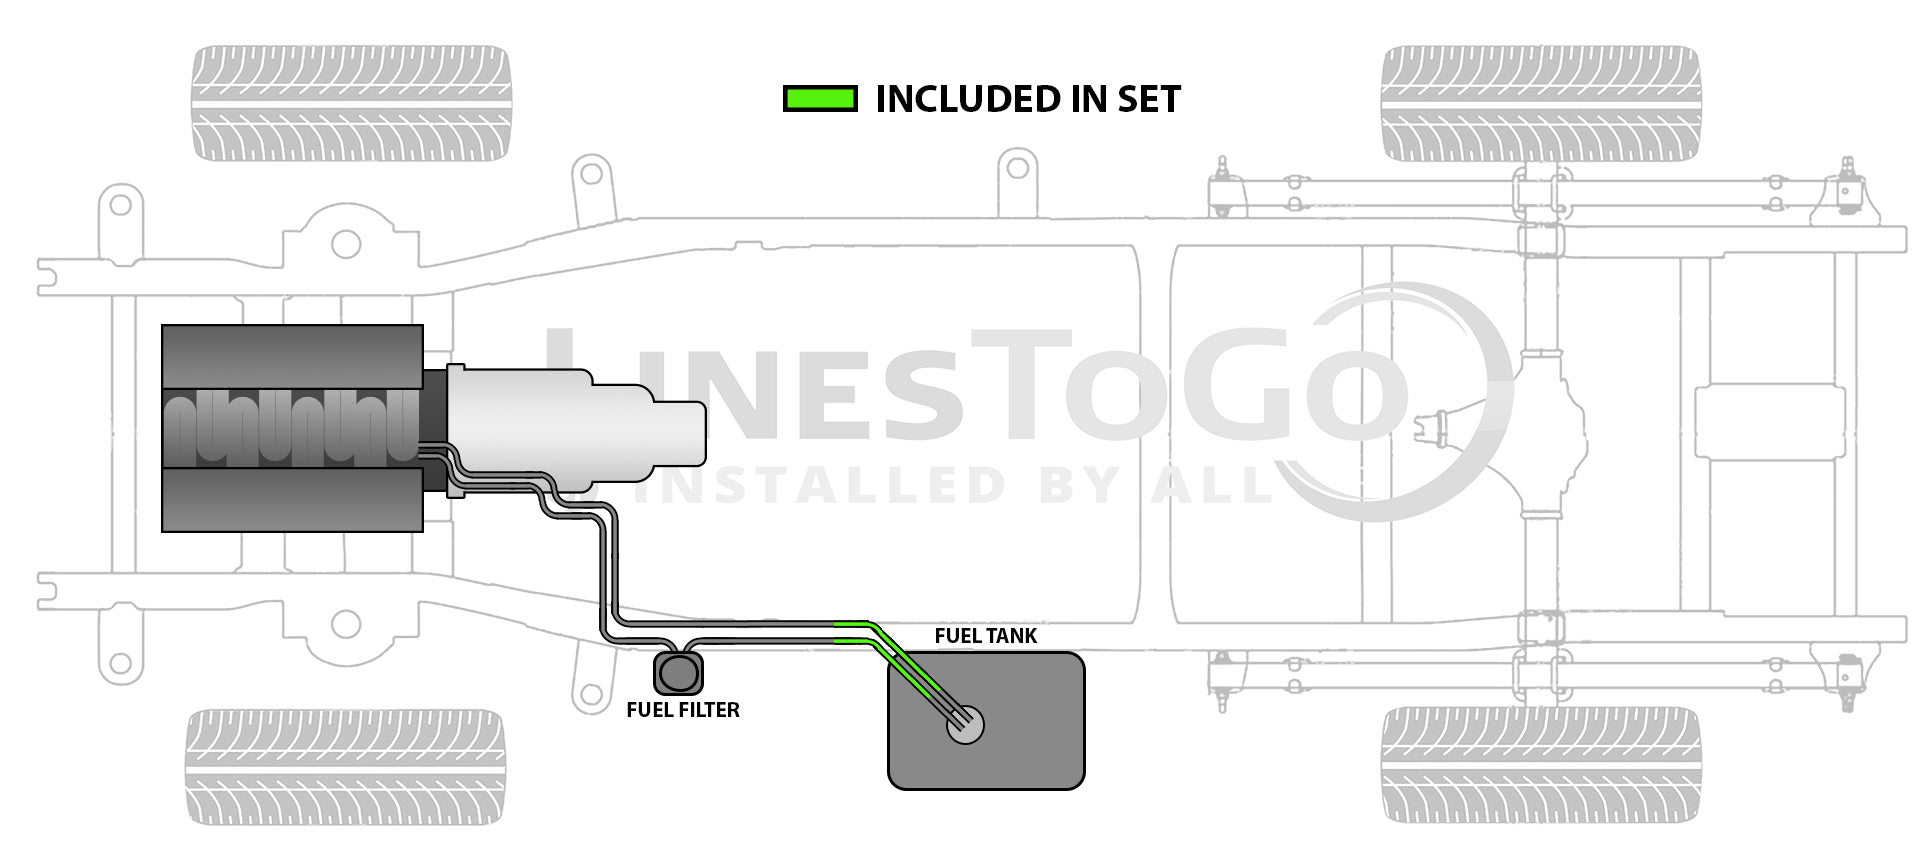 Chevy Kodiak Intermediate Fuel Line Set 2009 C6500/7500/8500 7.2L FL688-N2F